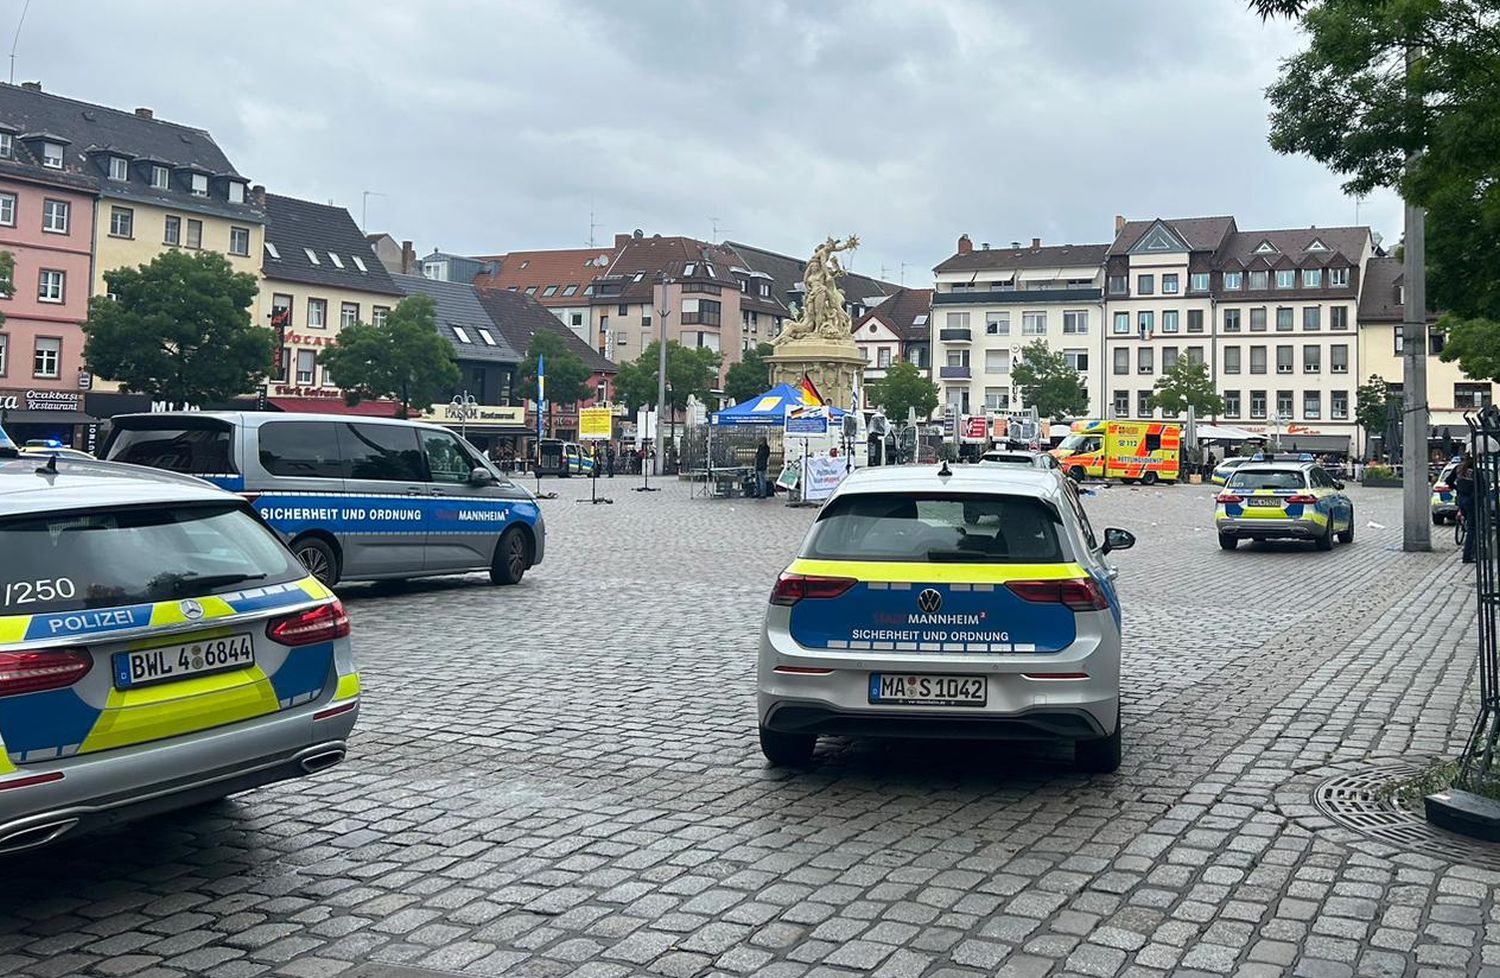 Mannheim – Messerstecherei am Marktplatz – NACHTRAG – Mehrere Schwerverletzte, u.a. ein Polizist  – Bewaffneter greift politischen Infostand an – Korrektur:  ein Toter wurde bislang nicht bestätigt